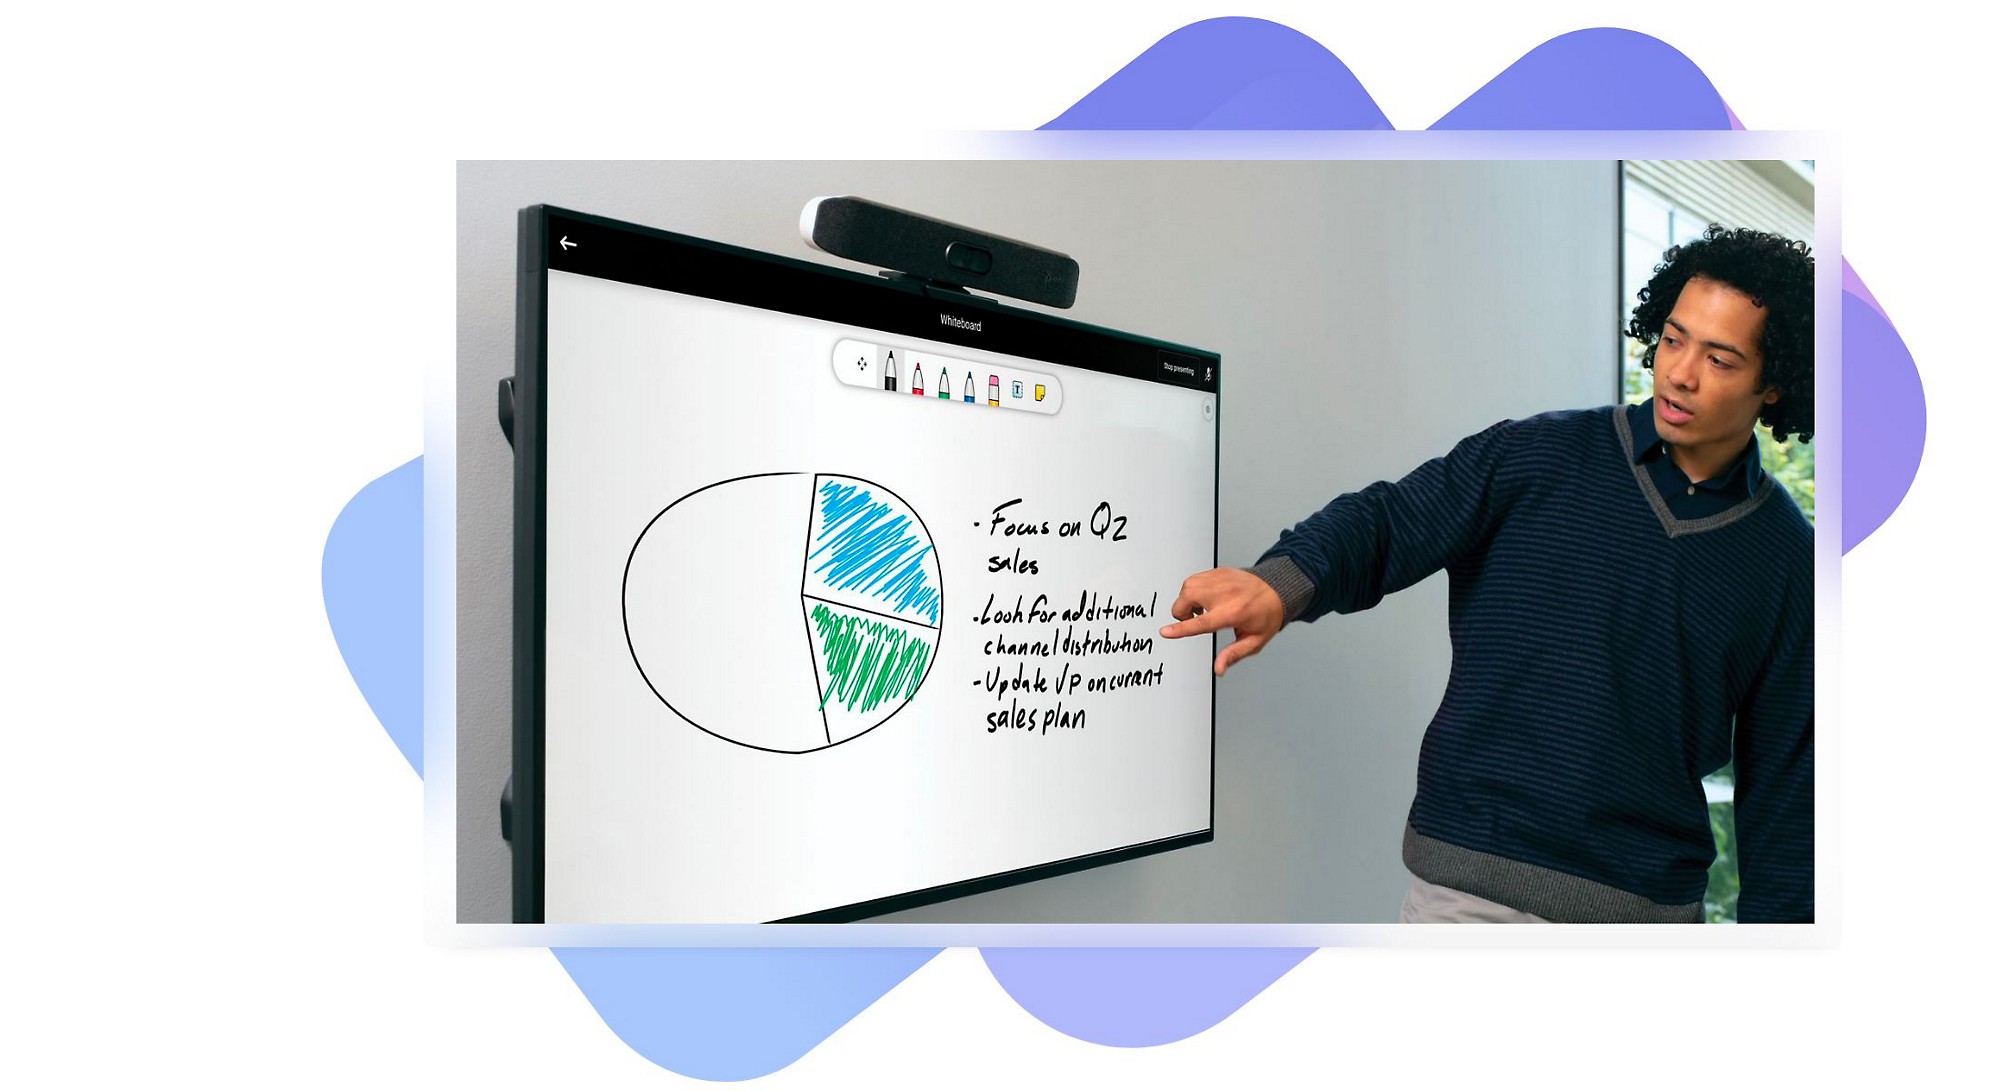 Een persoon gebruikt Whiteboard om vergadernotulen te presenteren op een apparaat met een groot touchscreen.